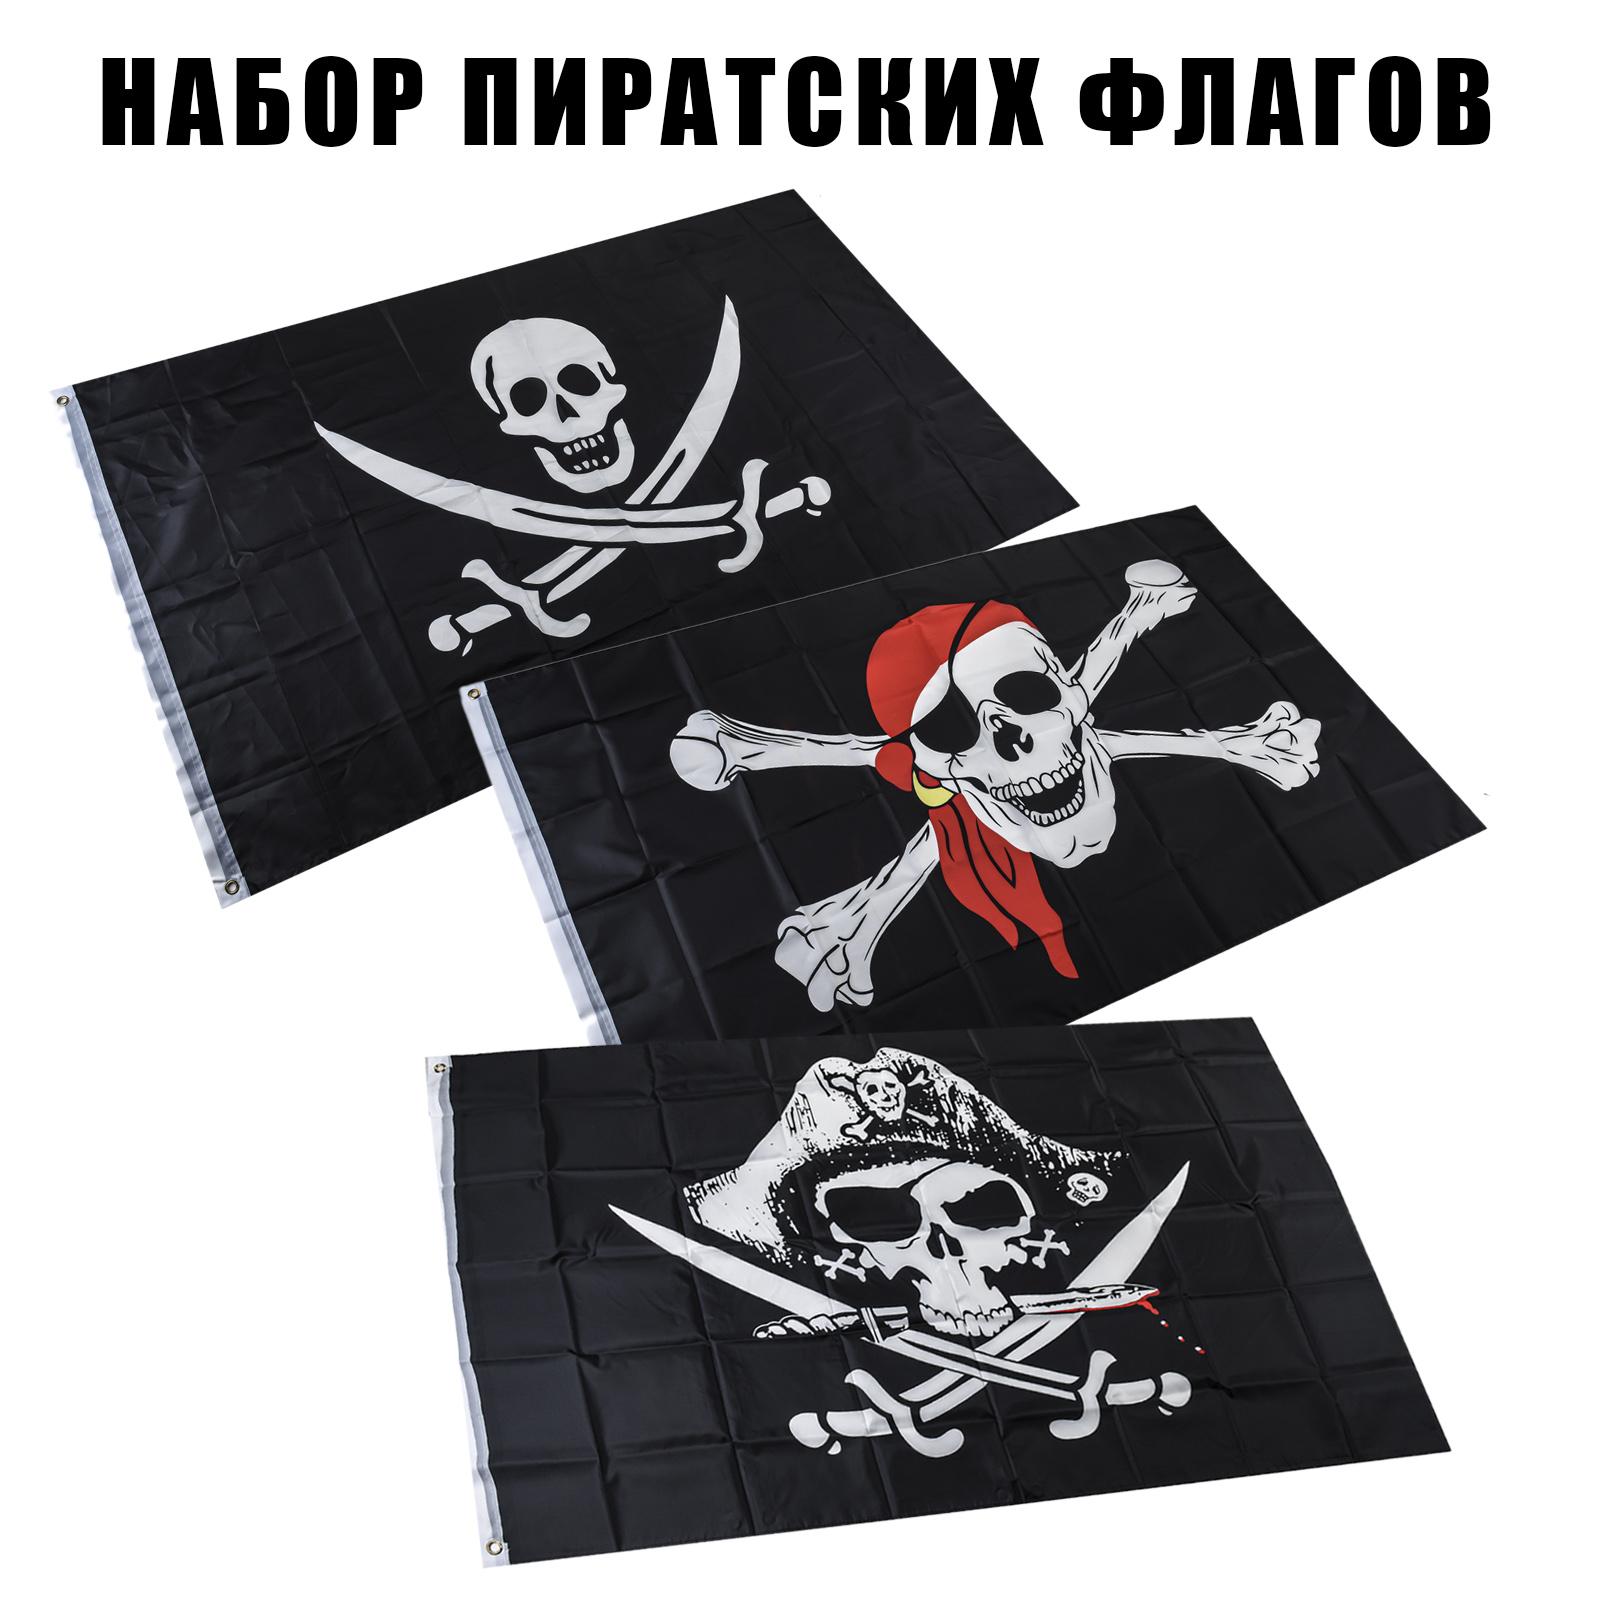 Купить пиратские флаги